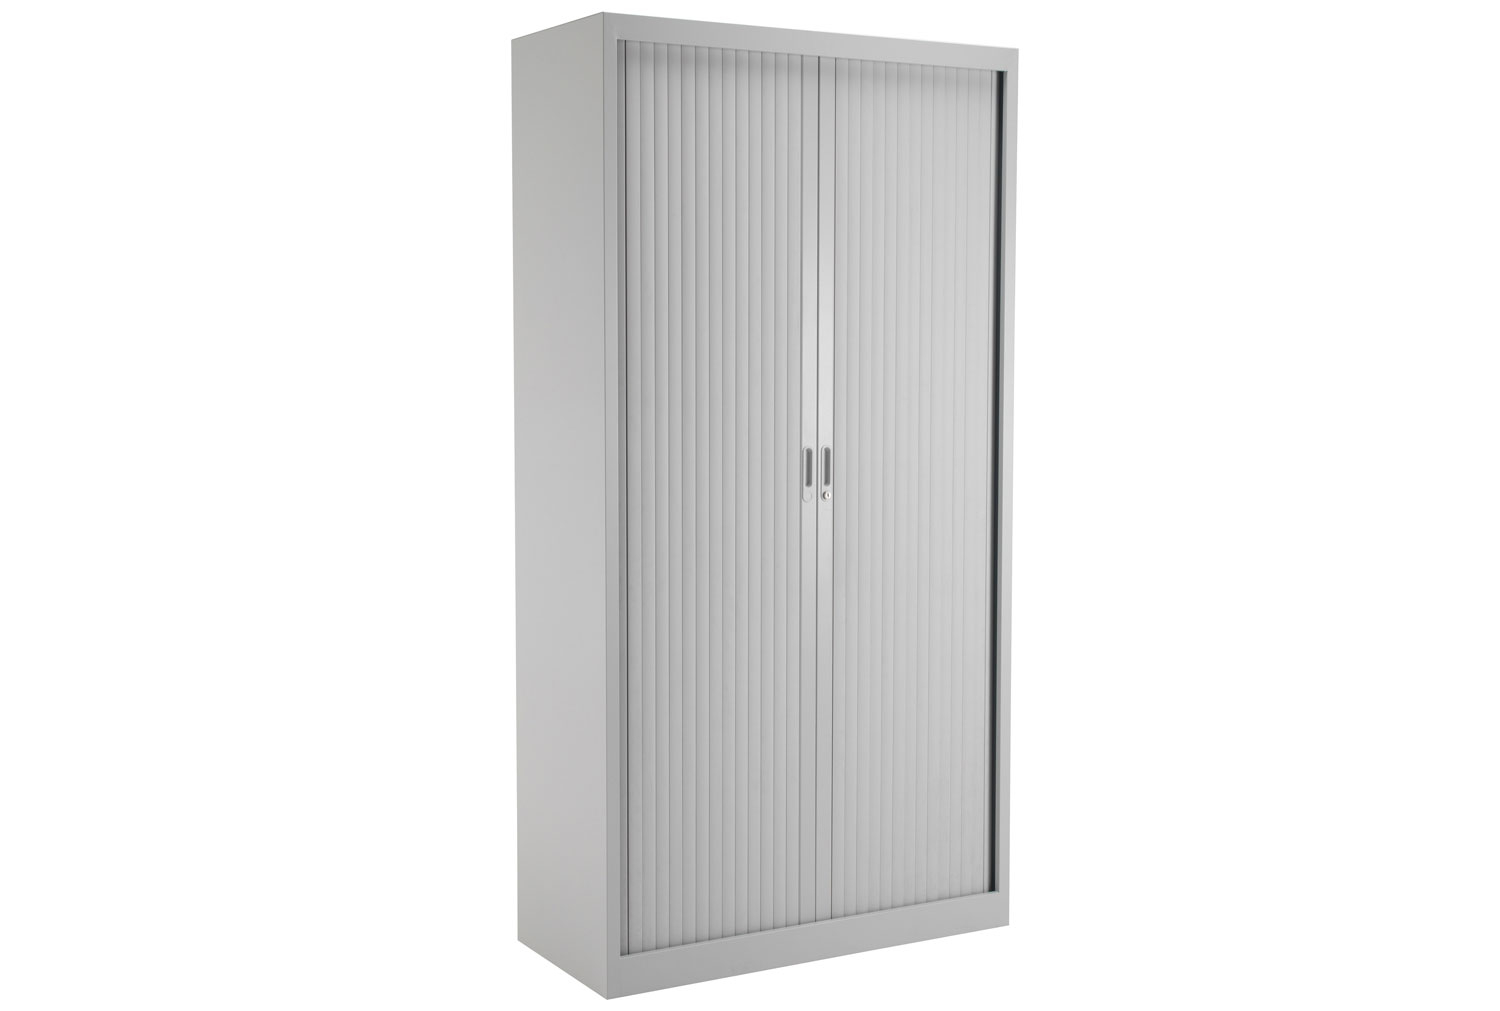 Value Line Metal Tambour Door Office Cupboards, 4 Shelf - 100wx45dx195h (cm), Grey, Fully Installed